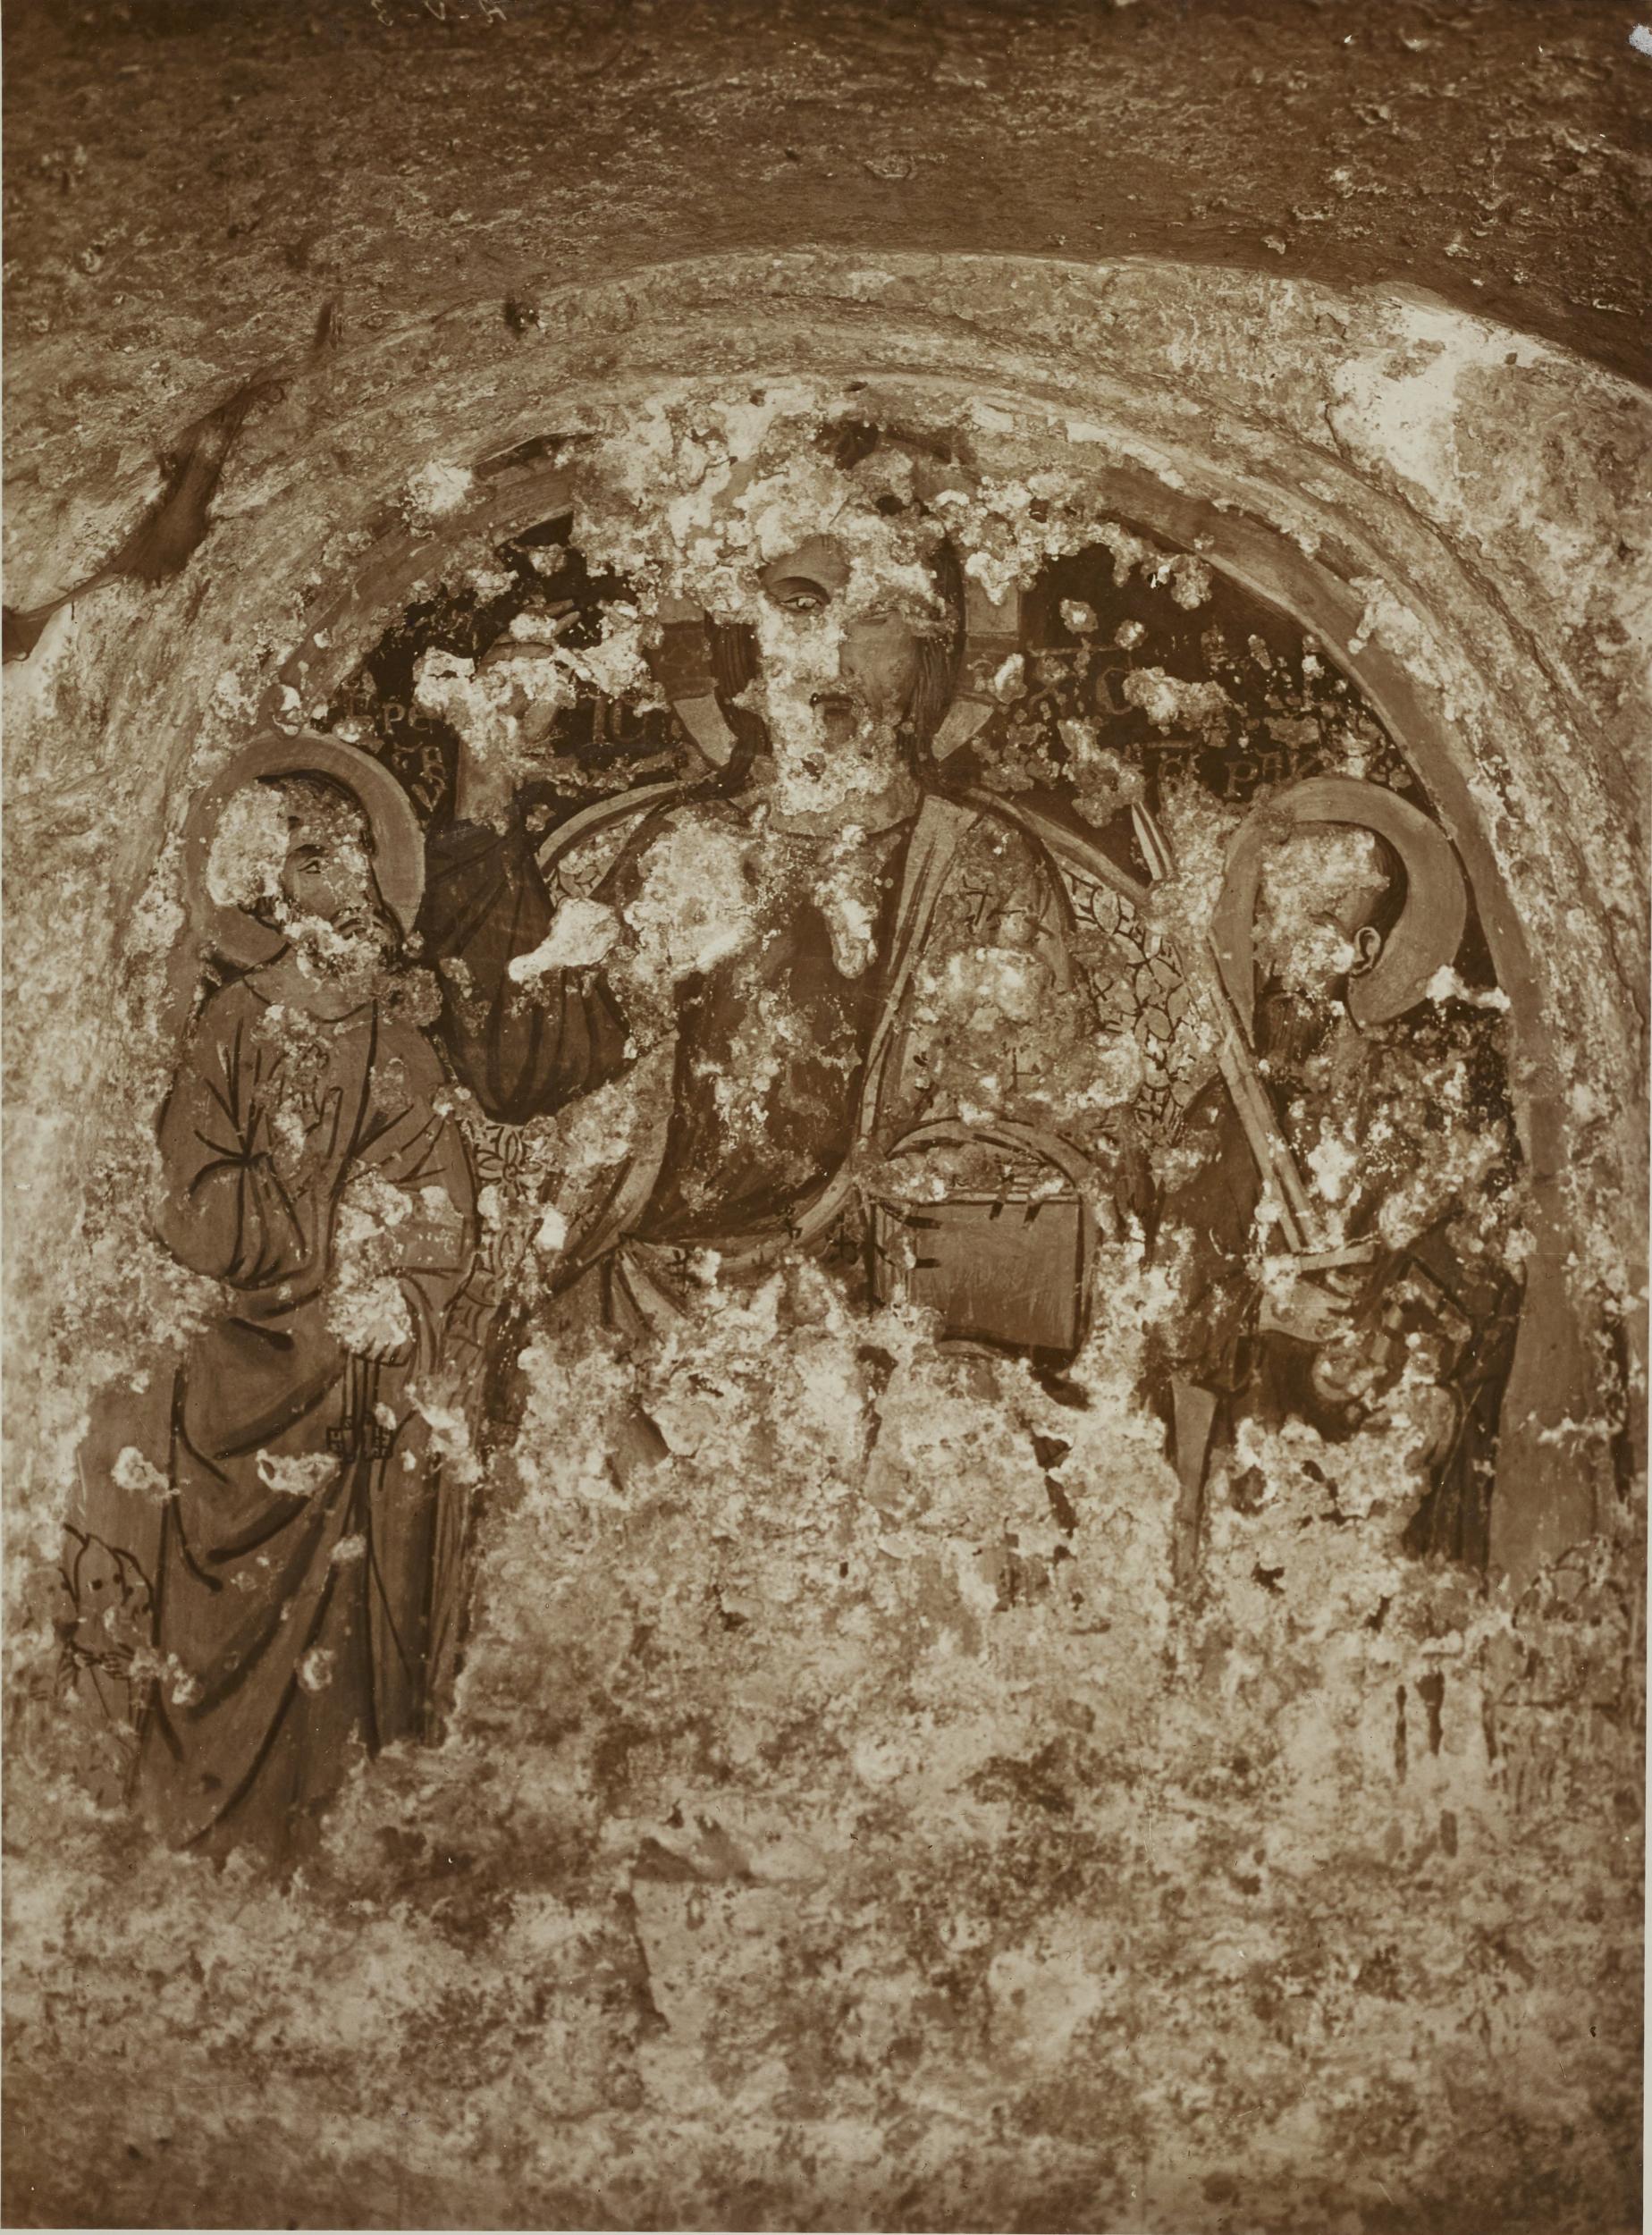 Fotografo non identificato, Andria - Chiesa di S. Croce, abside sinistra, il redentore tra i Ss. Pietro e Paolo, 1926-1950, gelatina ai sali d'argento/carta, MPI131858